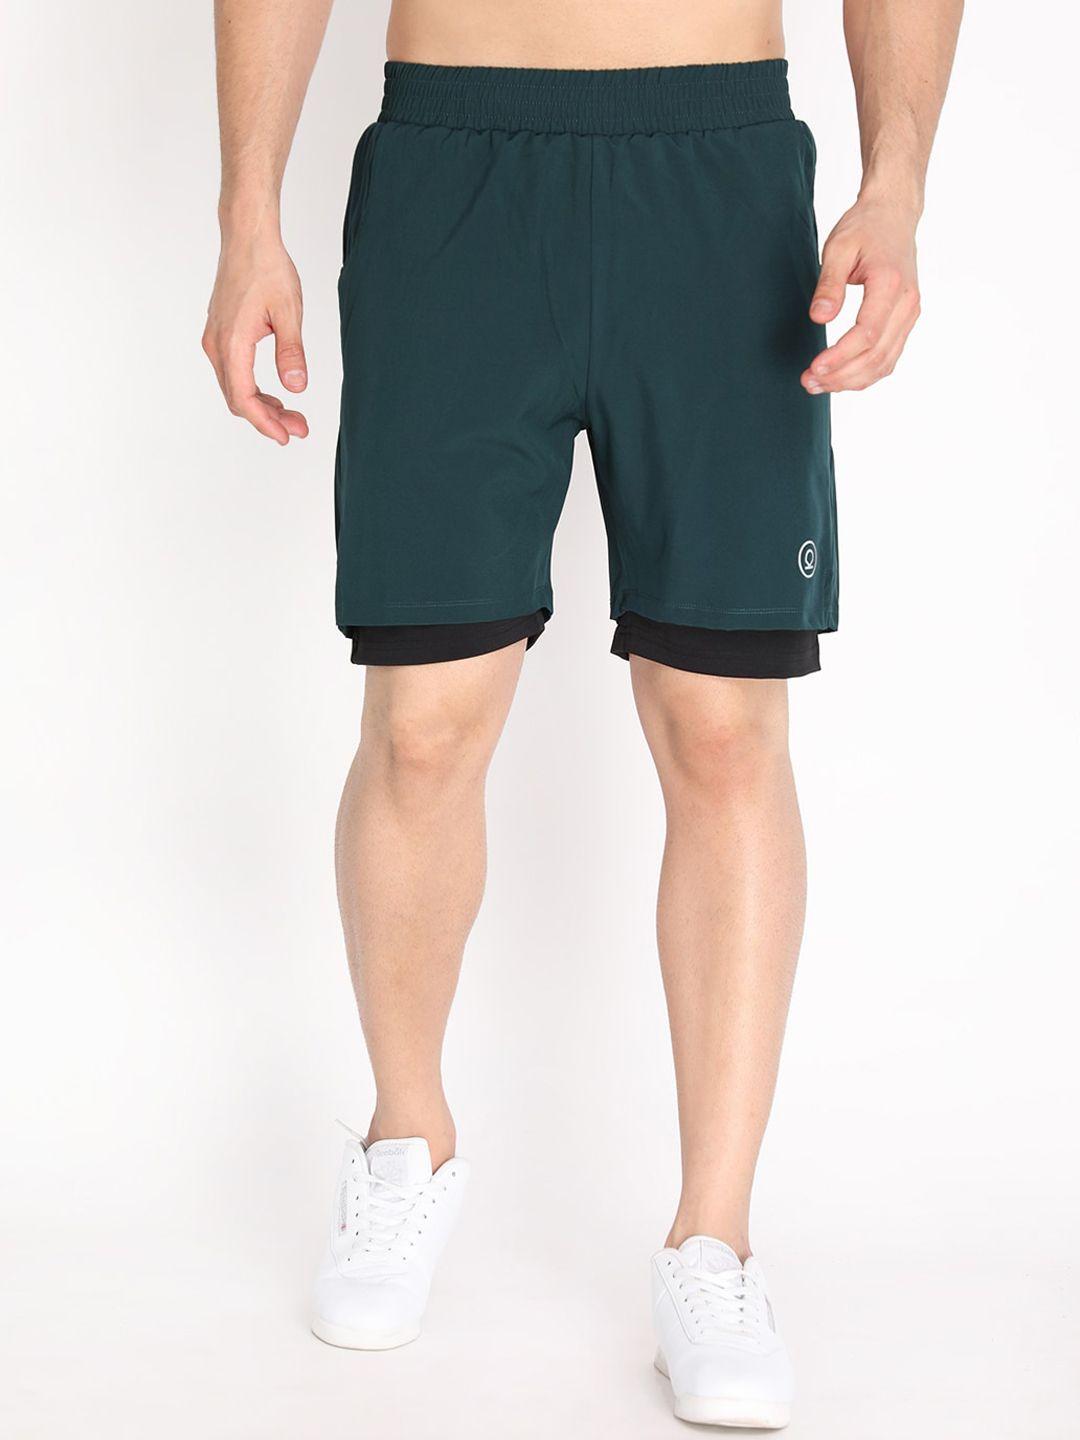 chkokko-men-green-running-sports-shorts